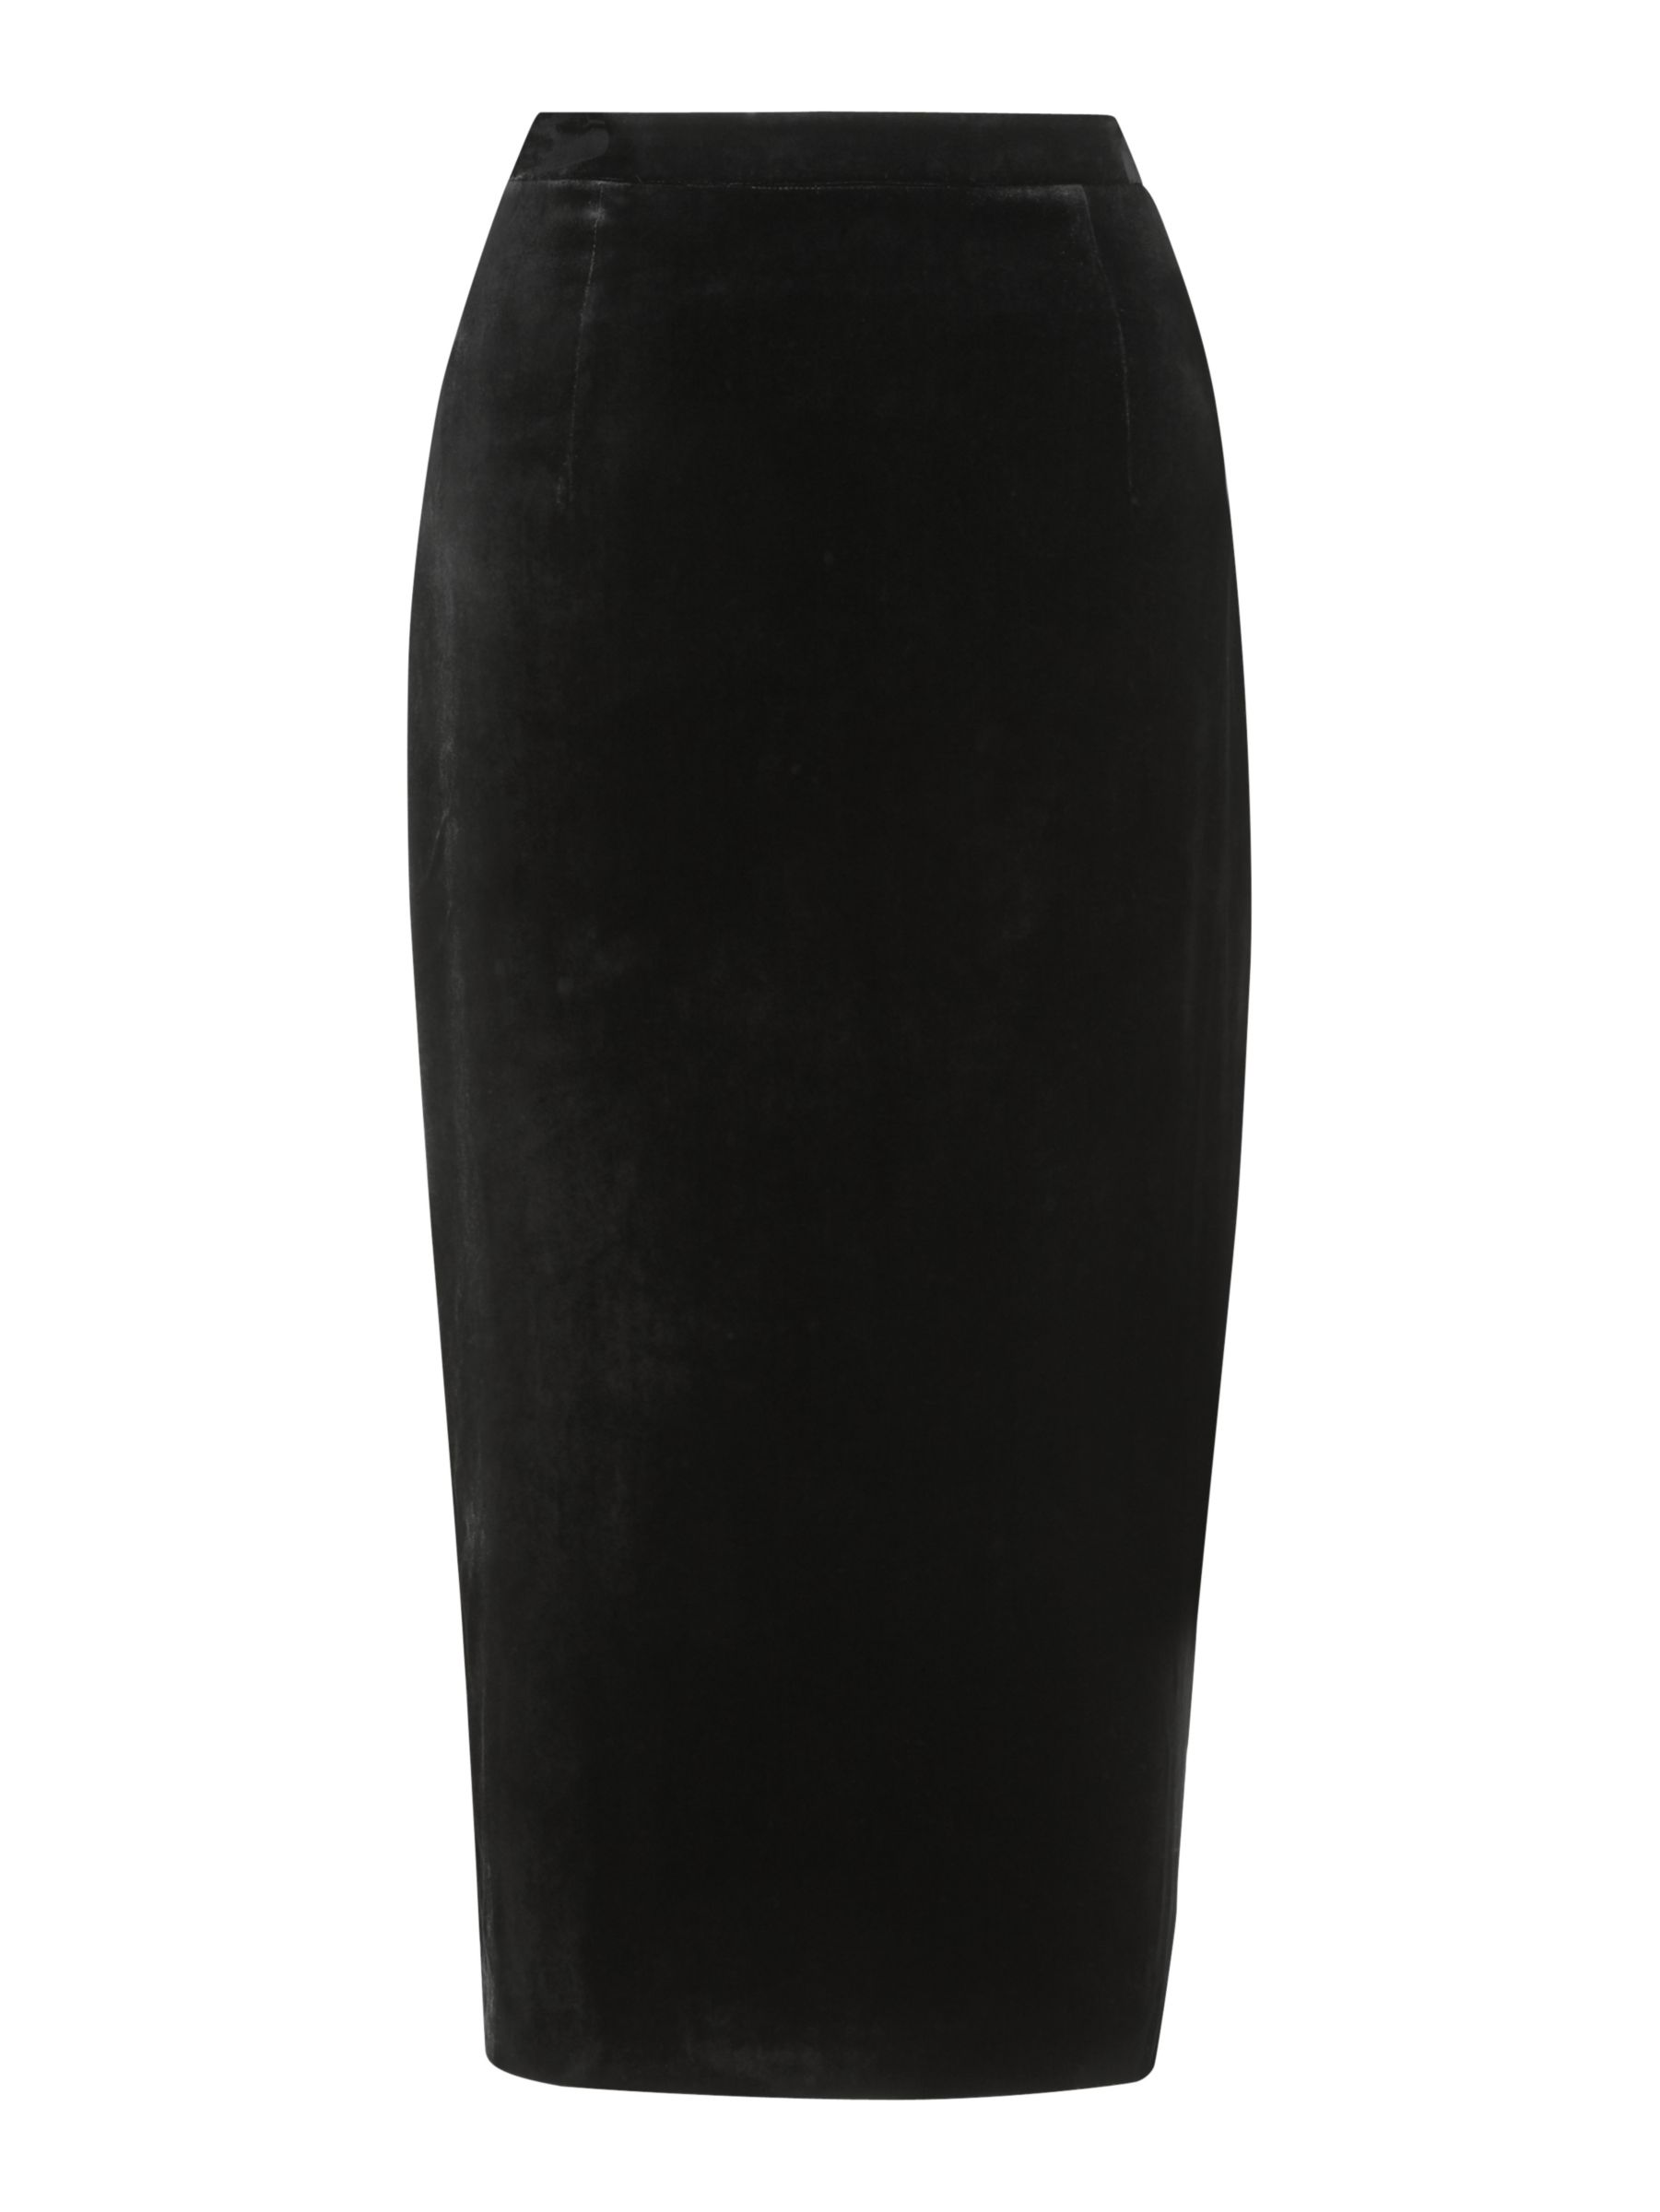 Boden Velvet Pencil Skirt, Black at John Lewis & Partners